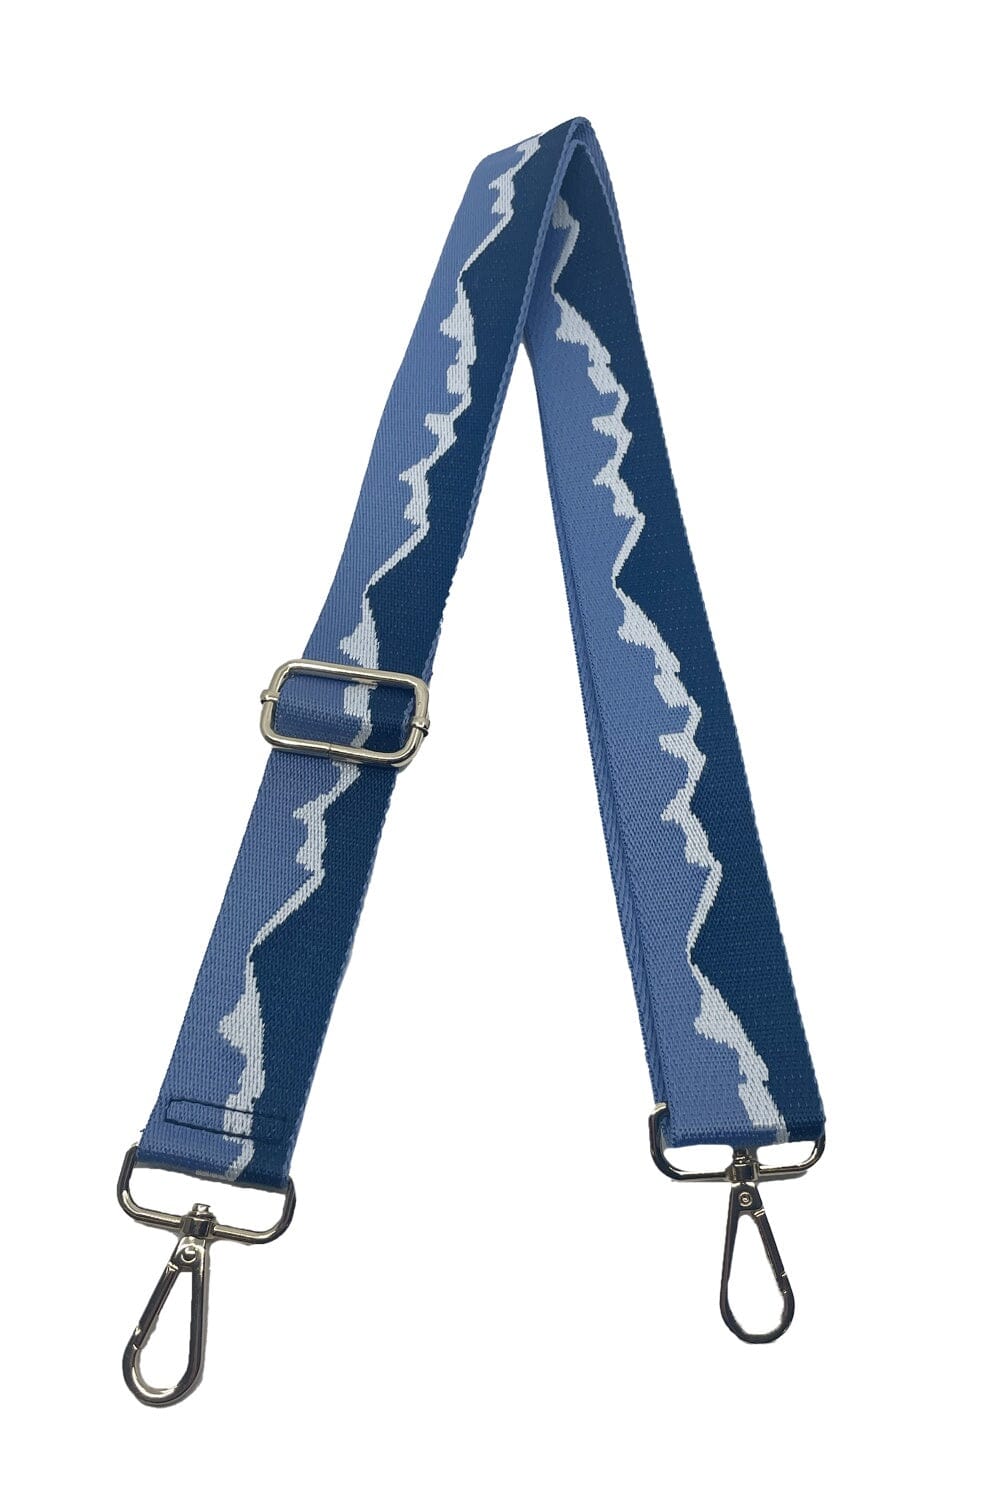 Shiloh Bag Strap Blue Accessories